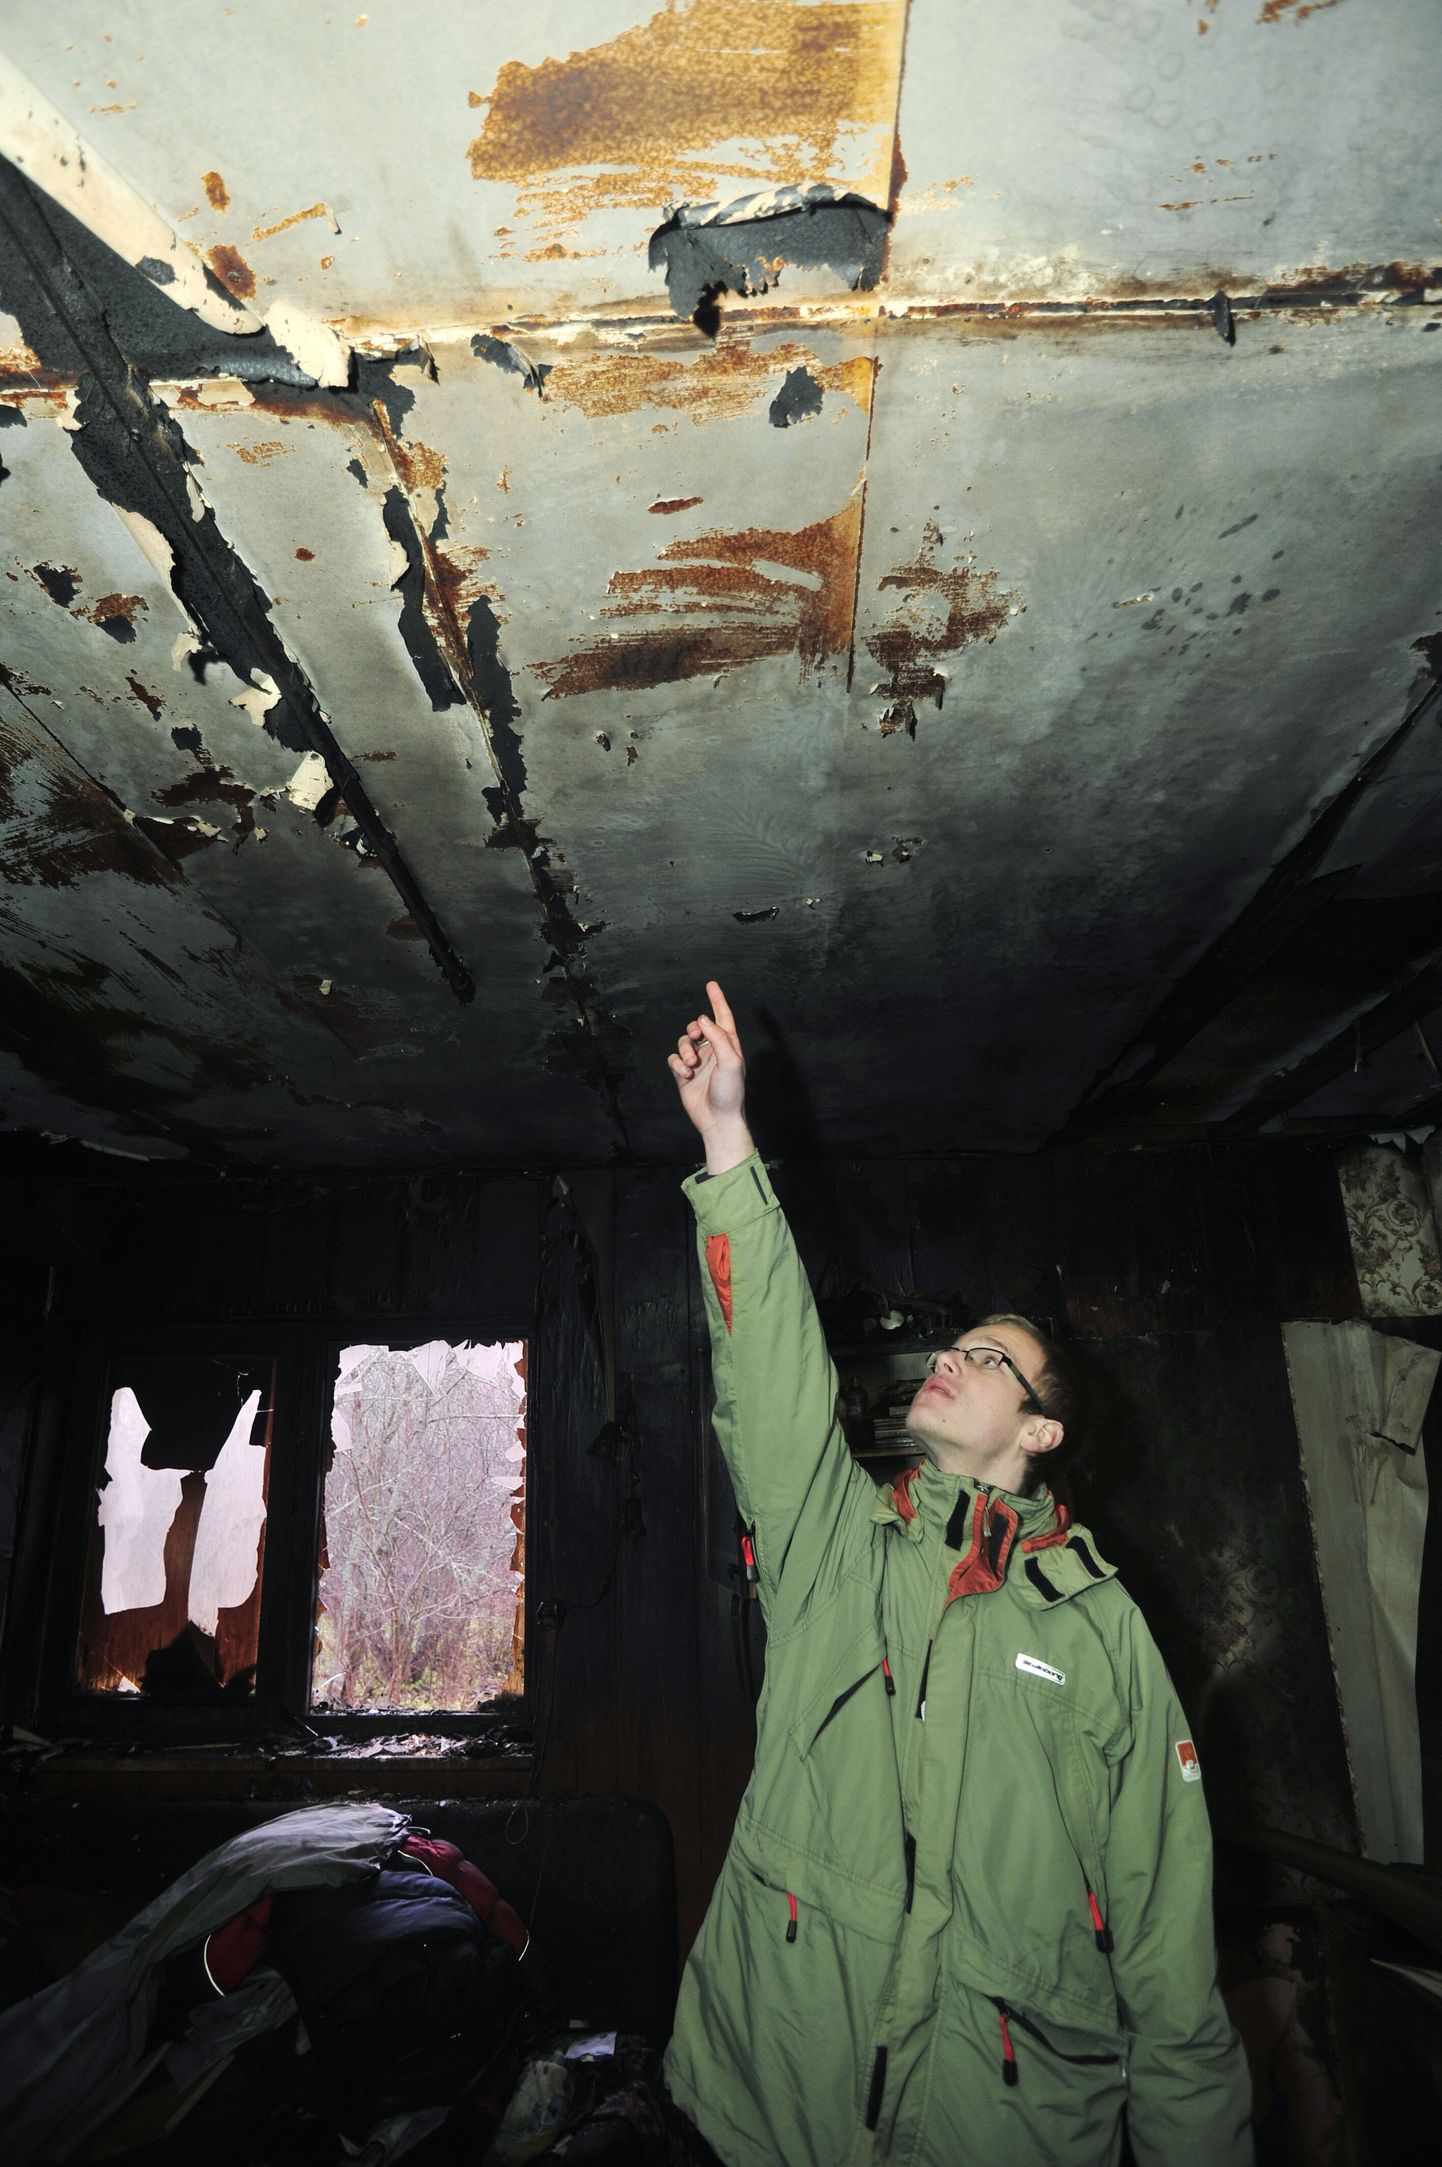 Leekidest pääsenud Janar Aunapuu näitab põlenud toa lage, kus asus teda unest äratanud suitsuandur.